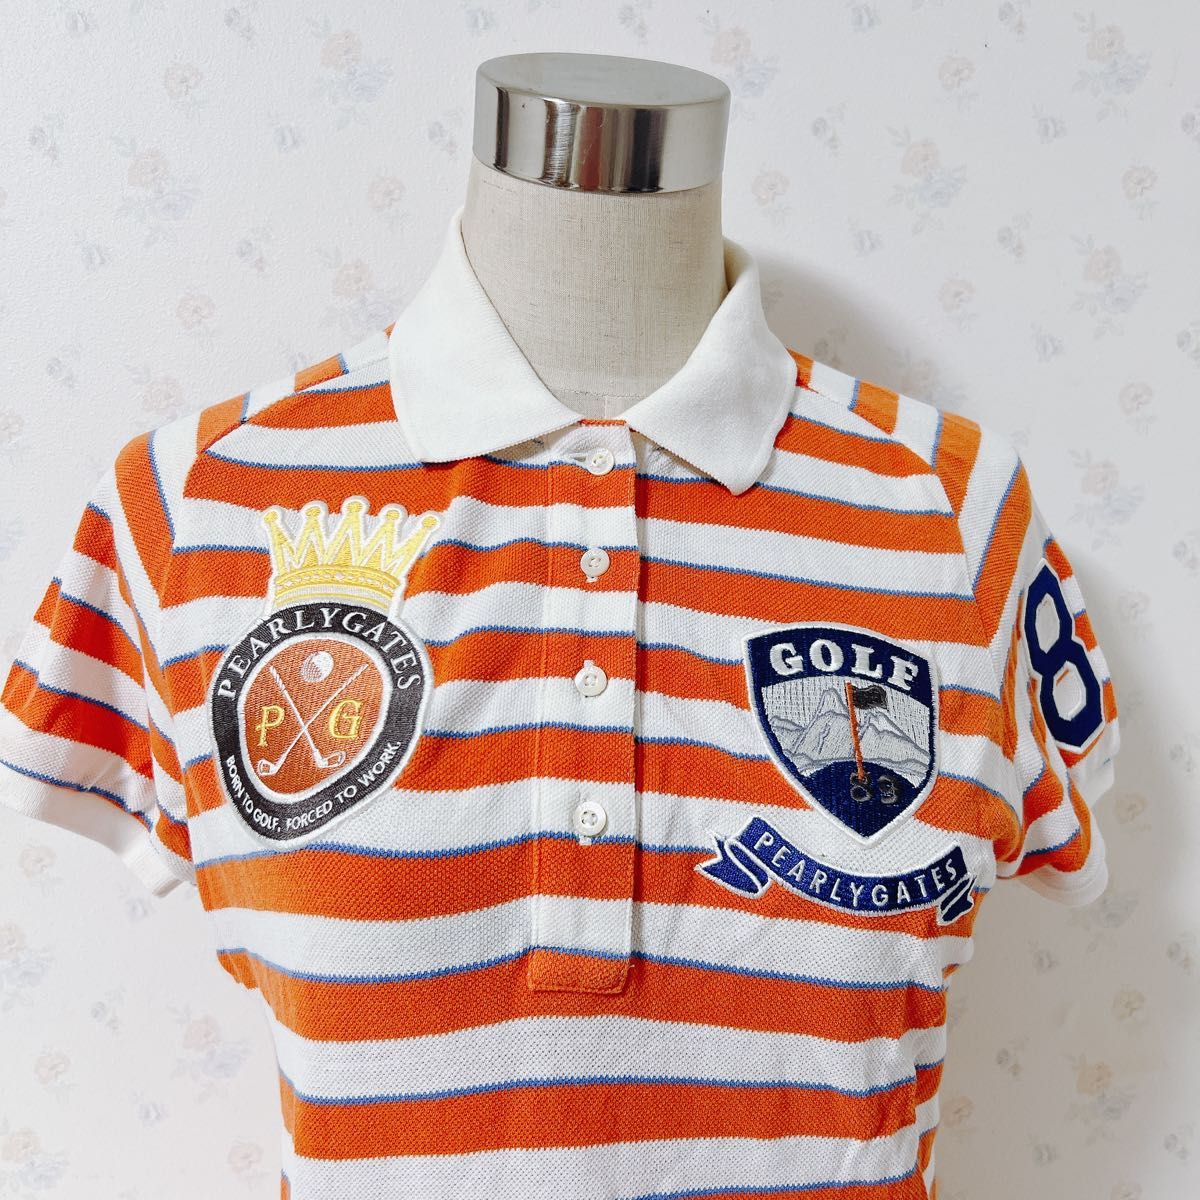 【PEARLYGATES】半袖ポロシャツ　オレンジ　ボーダー　ゴルフ　刺繍ロゴ